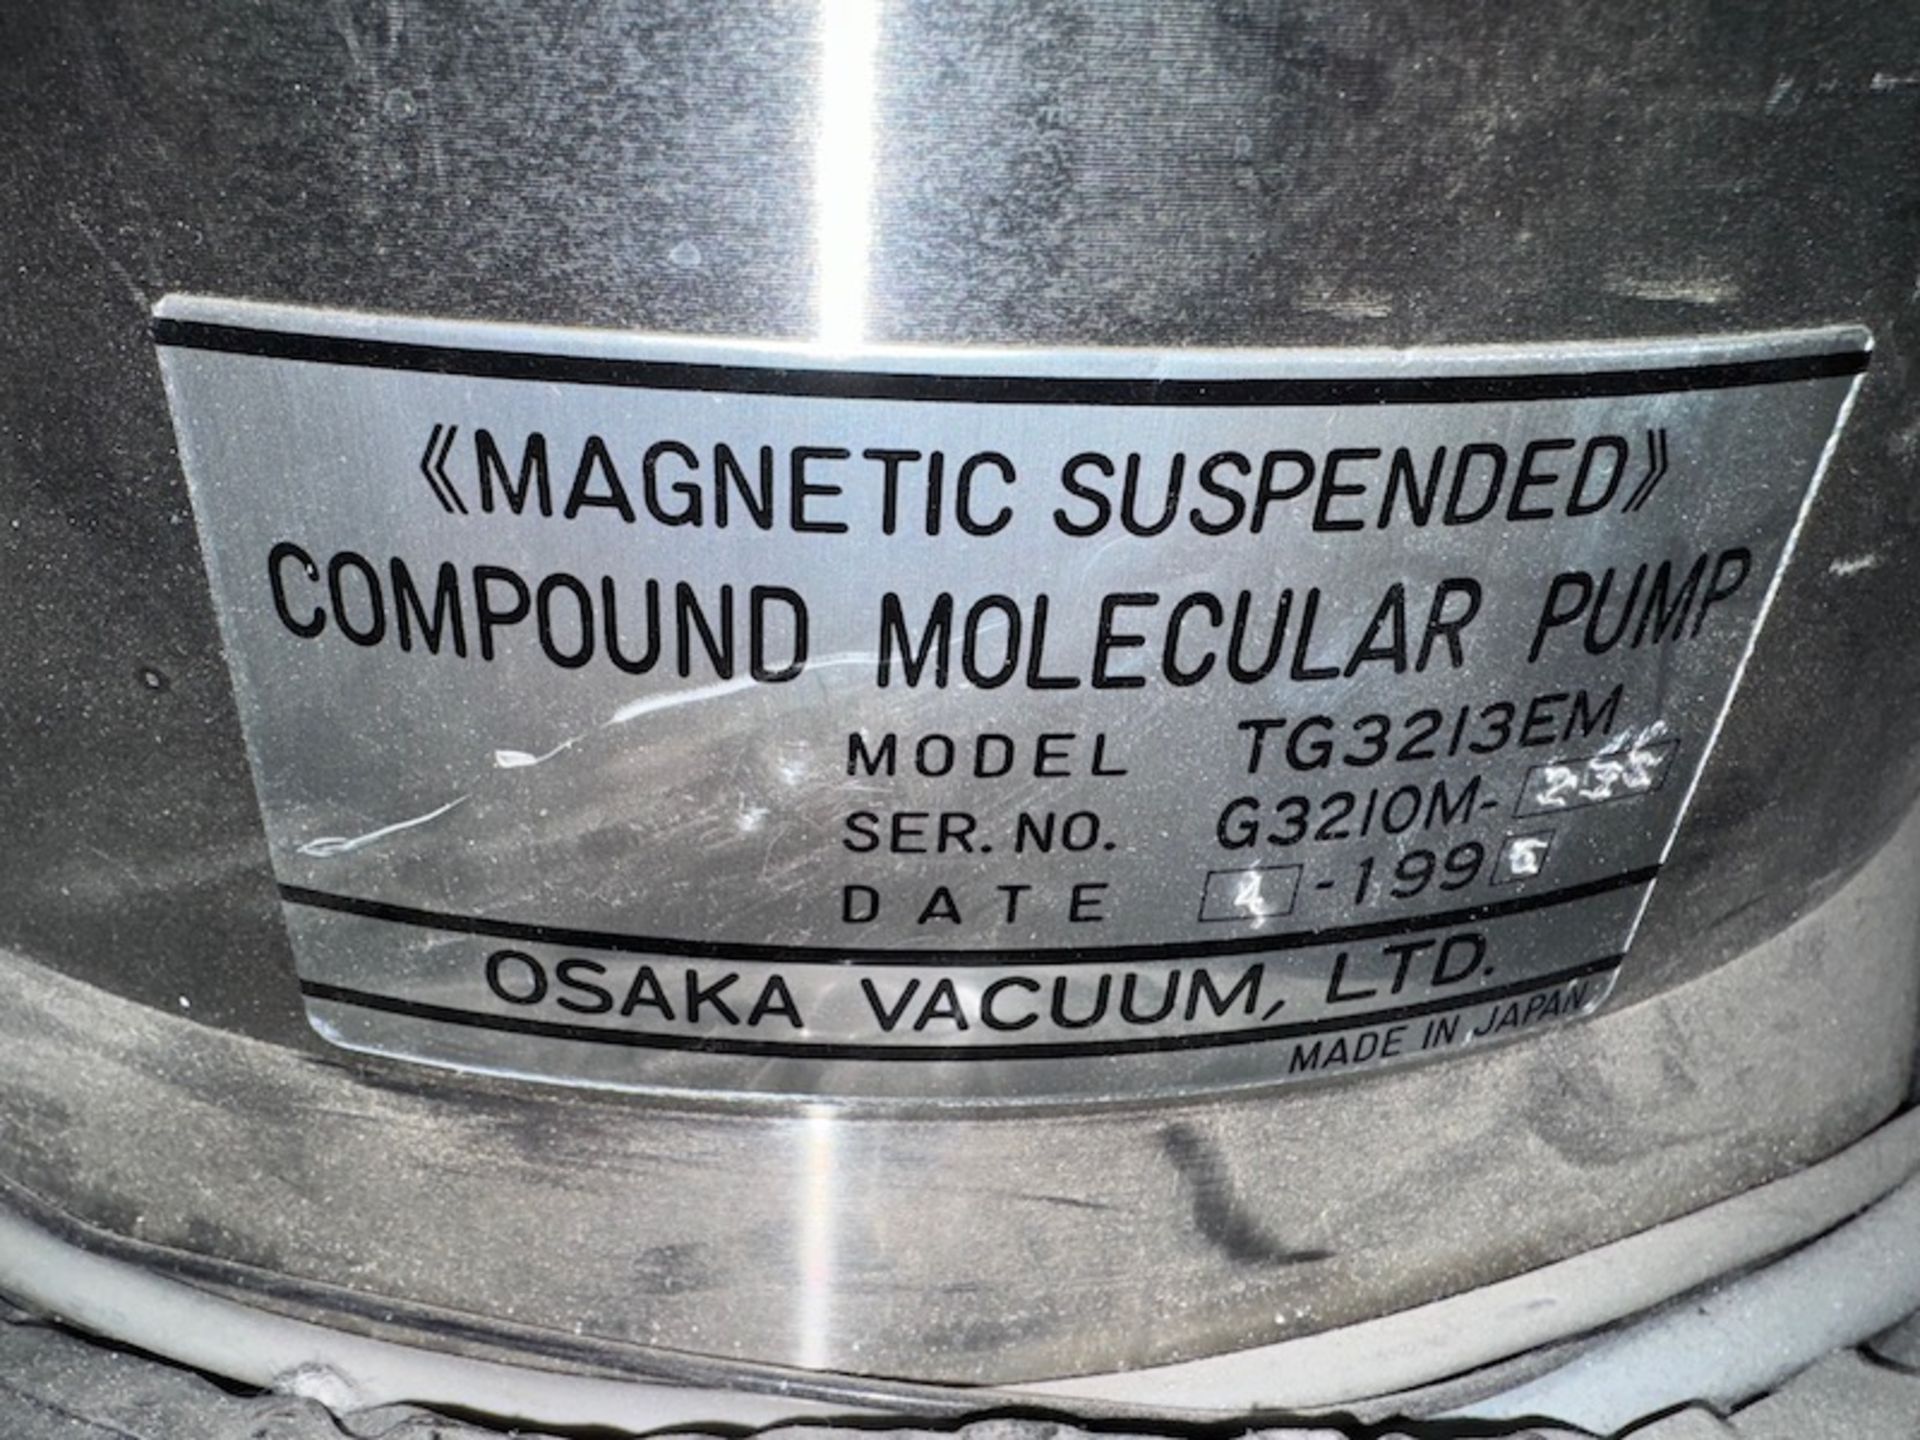 OSAKA VACUUM TG3213EM COMPOUND MOLECULAR PUMP WITH OSAKA TD3200 POWER SUPPLY - Image 3 of 18